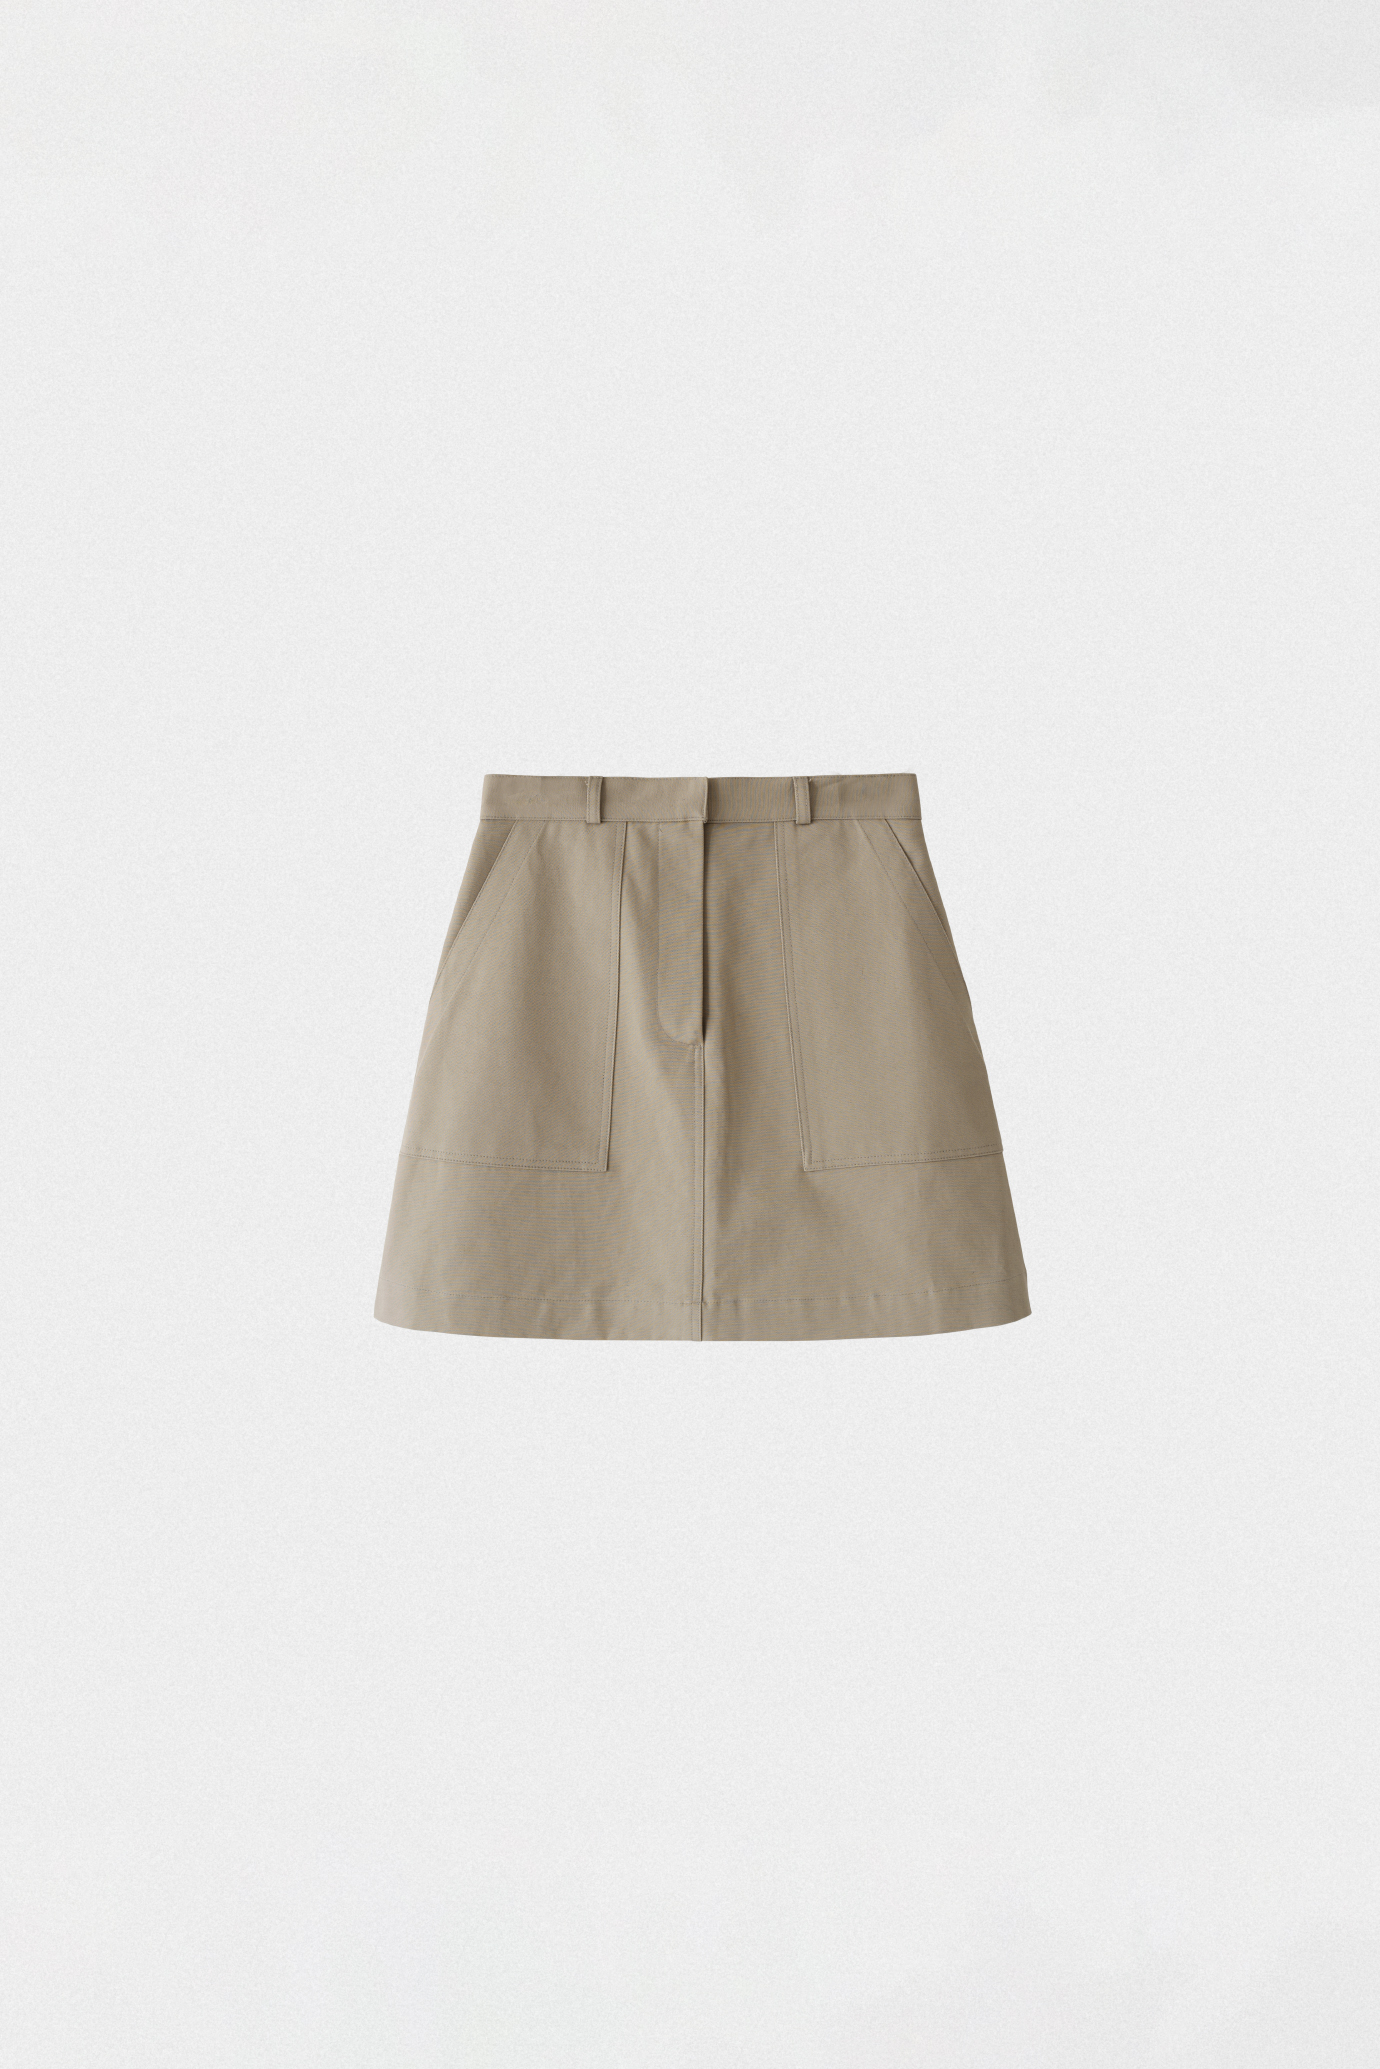 19890_Cotton Miniskirt [zf]